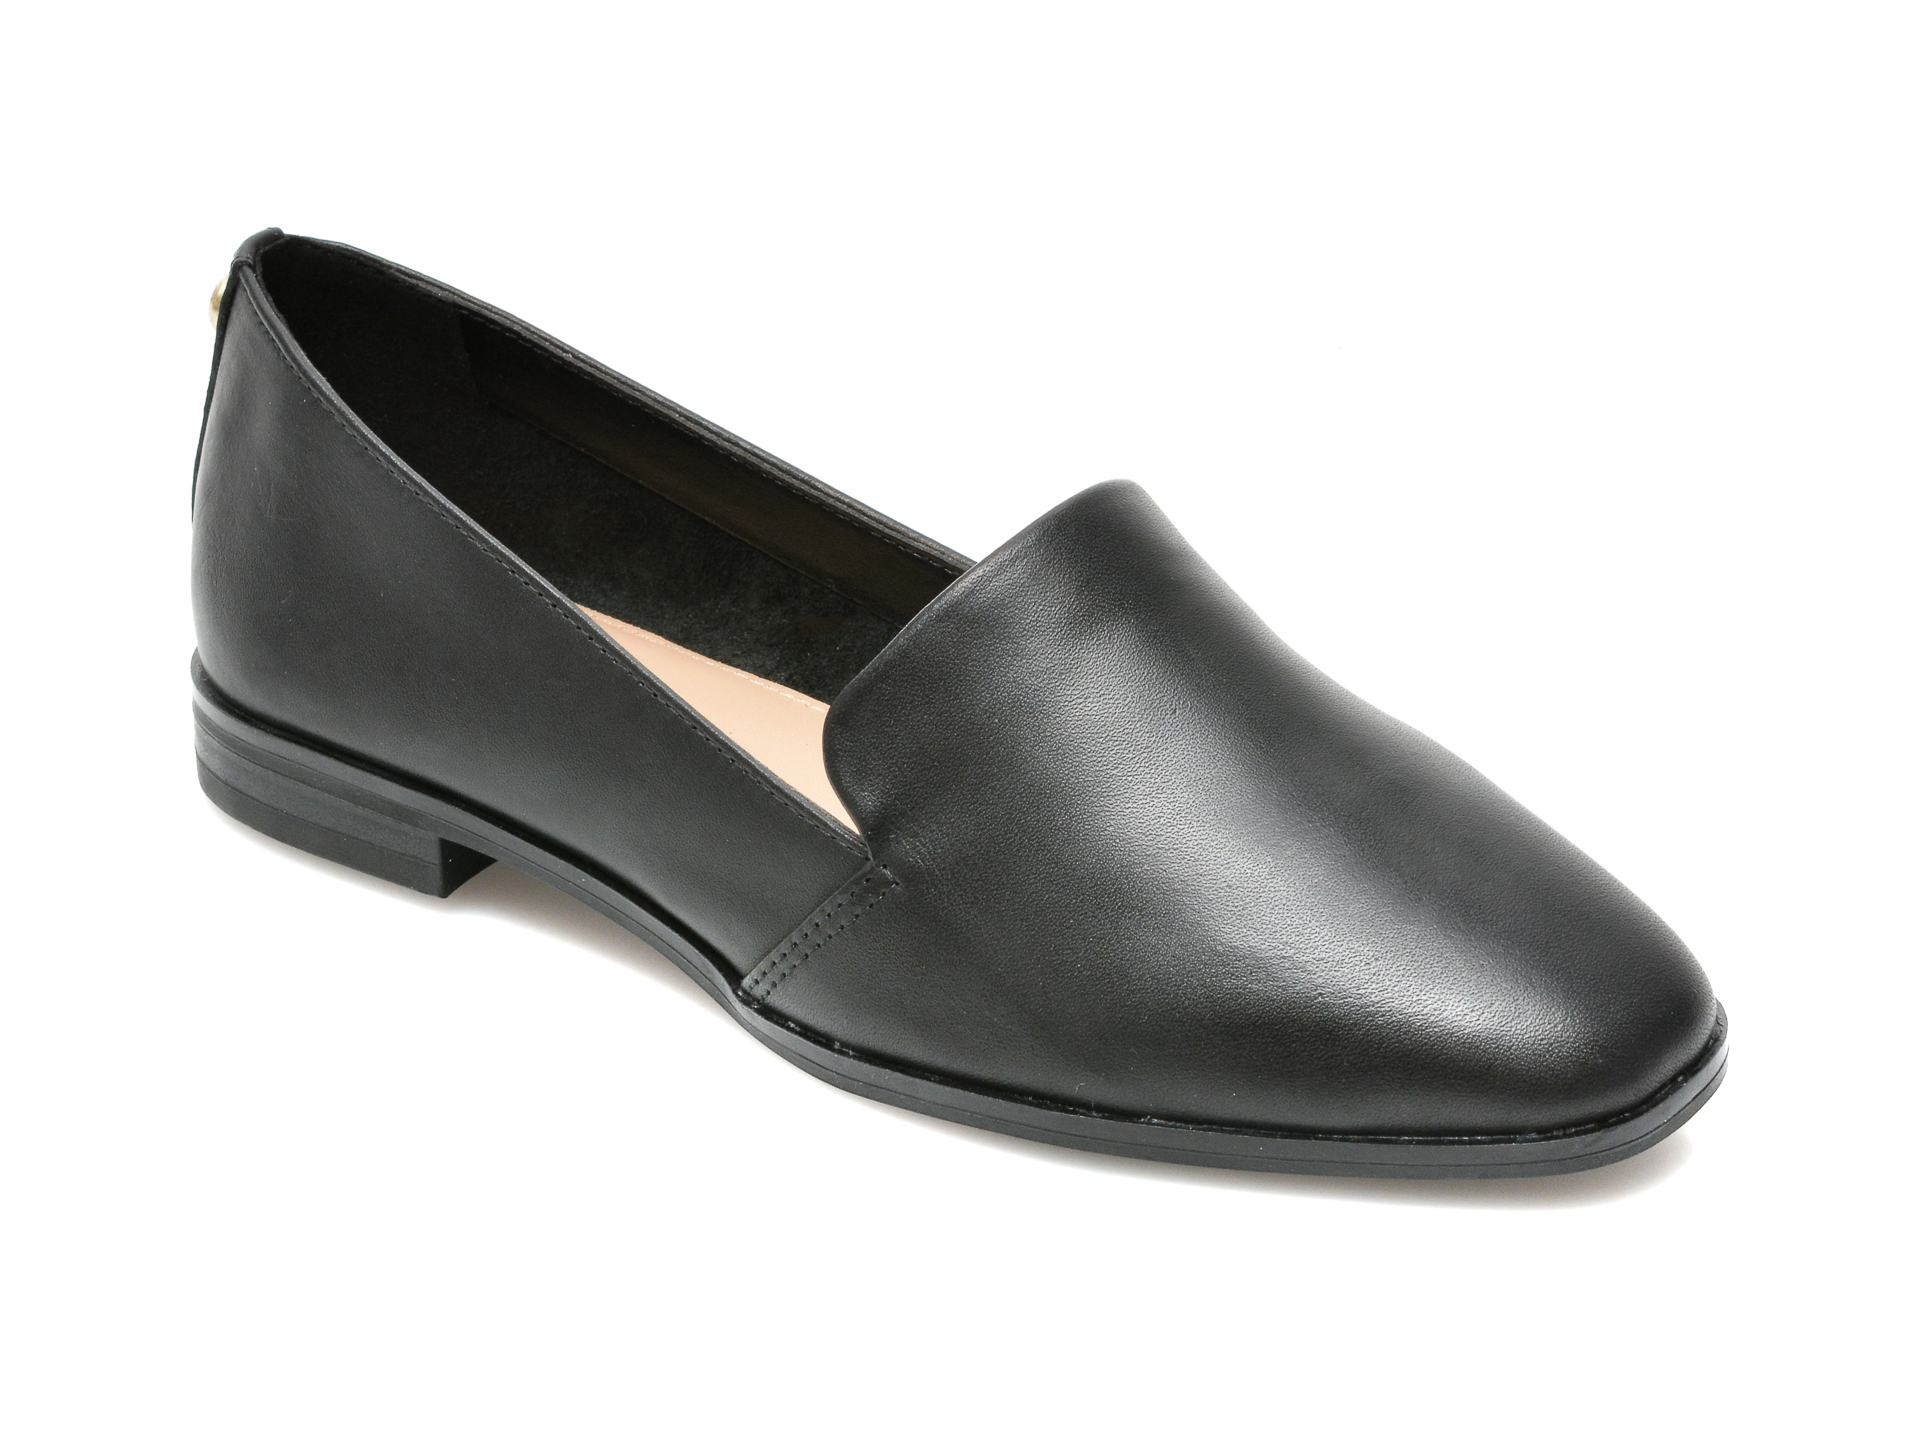 Pantofi ALDO negri, VEADITH001, din piele naturala Aldo Aldo